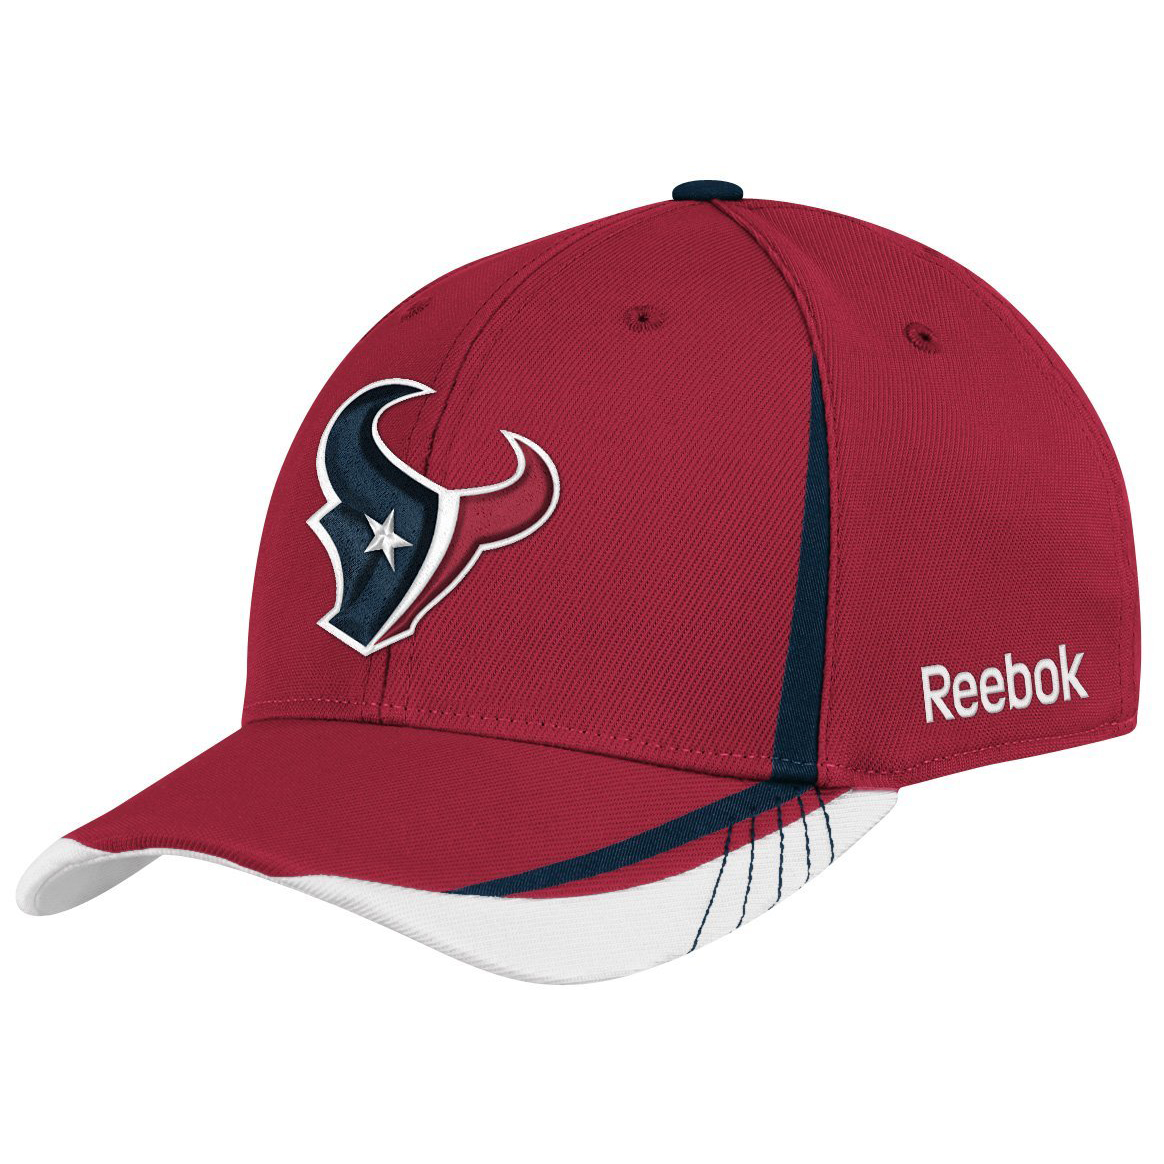 锐步美国职业橄榄球联盟 NFL 队徽图案男式棒球帽(TW94Z)  $5.90